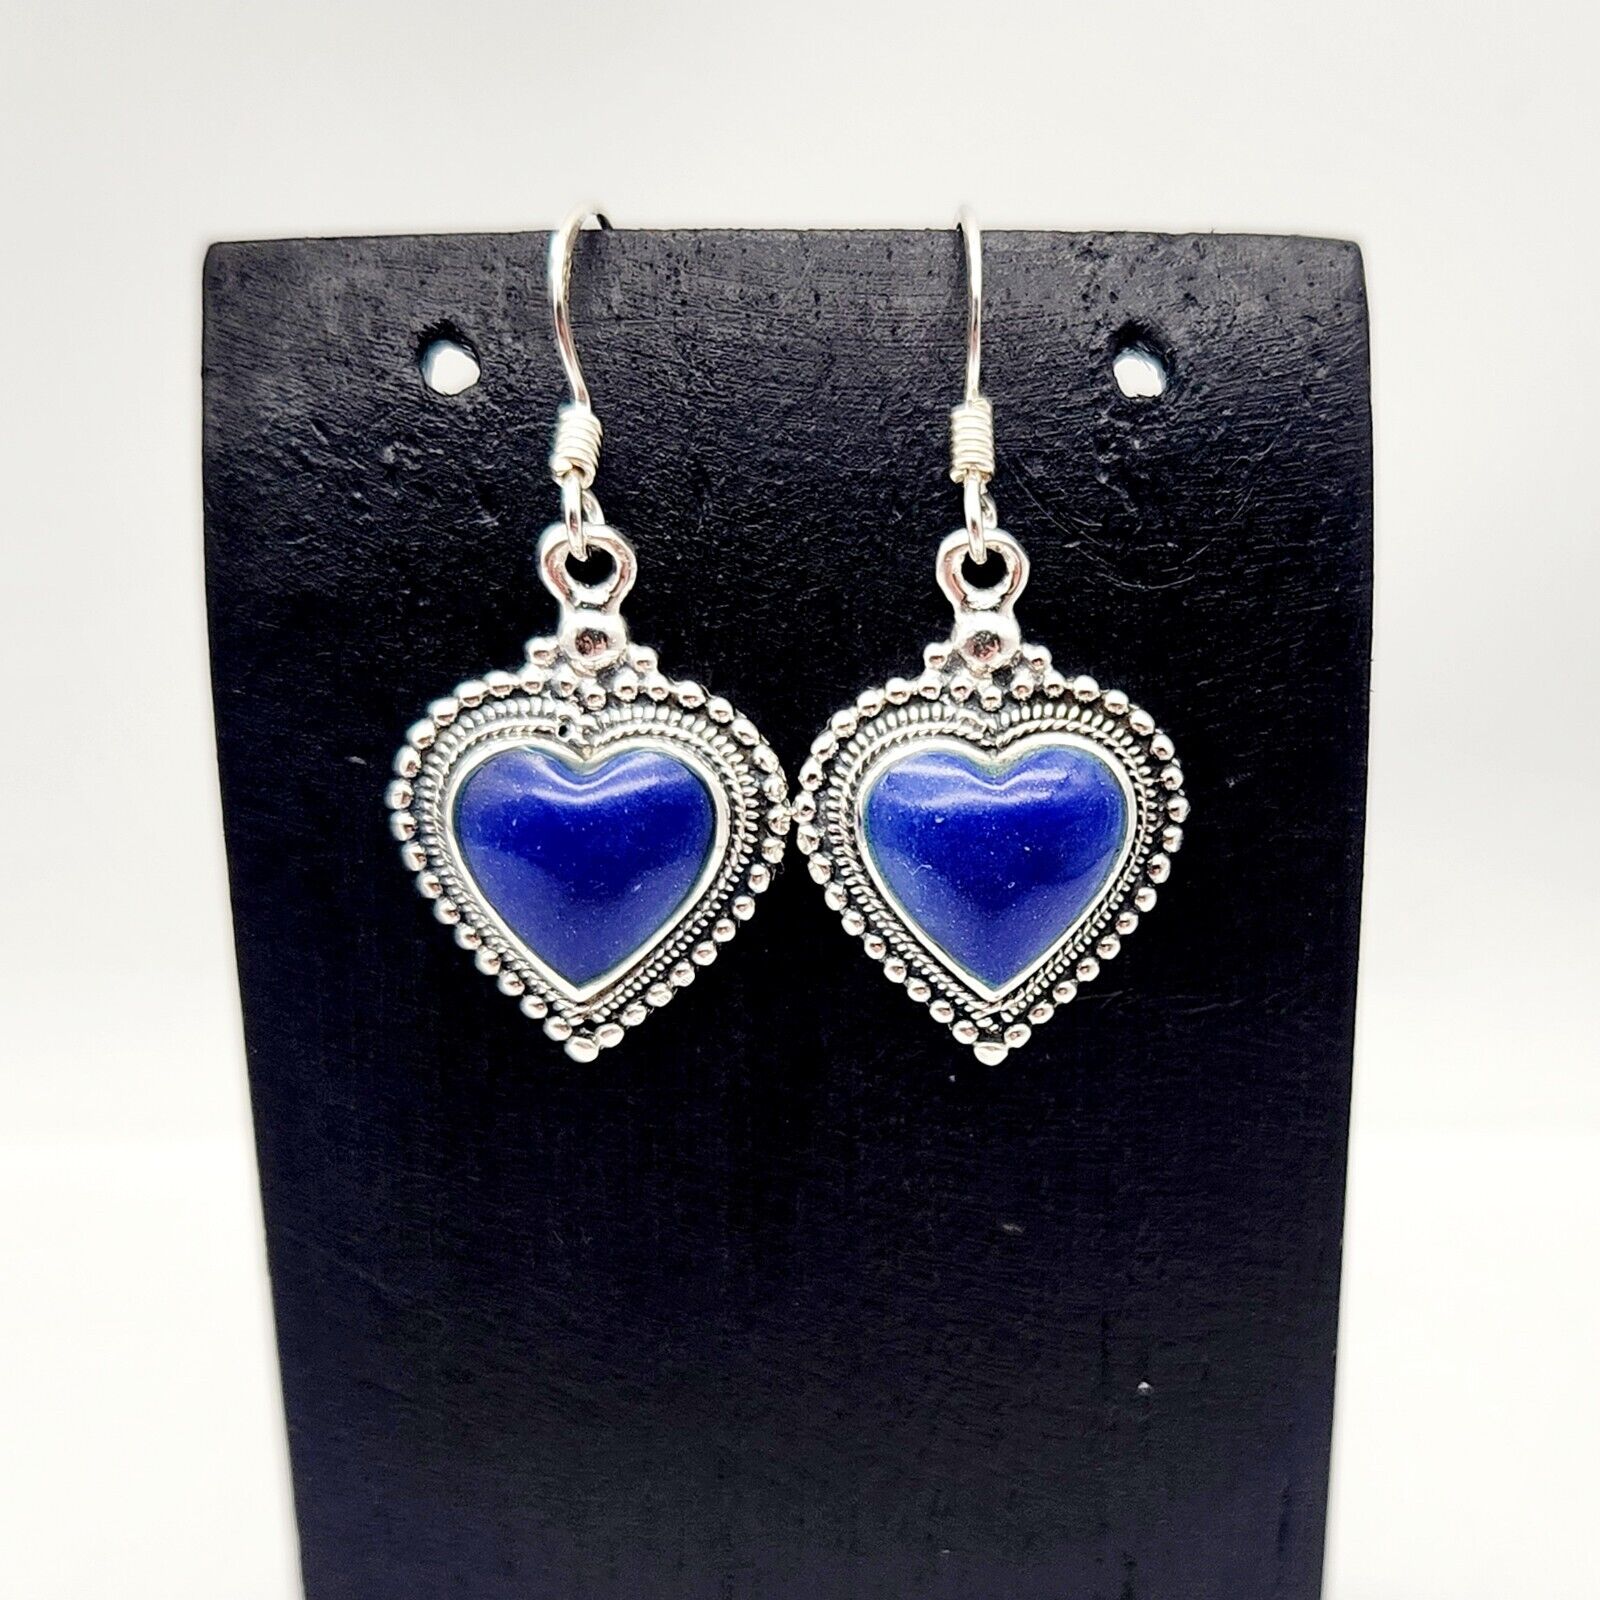 Vintage Lapis Lazuli Gemstone Inlay Heart Sterling Silver Hook Earrings - 5.3g